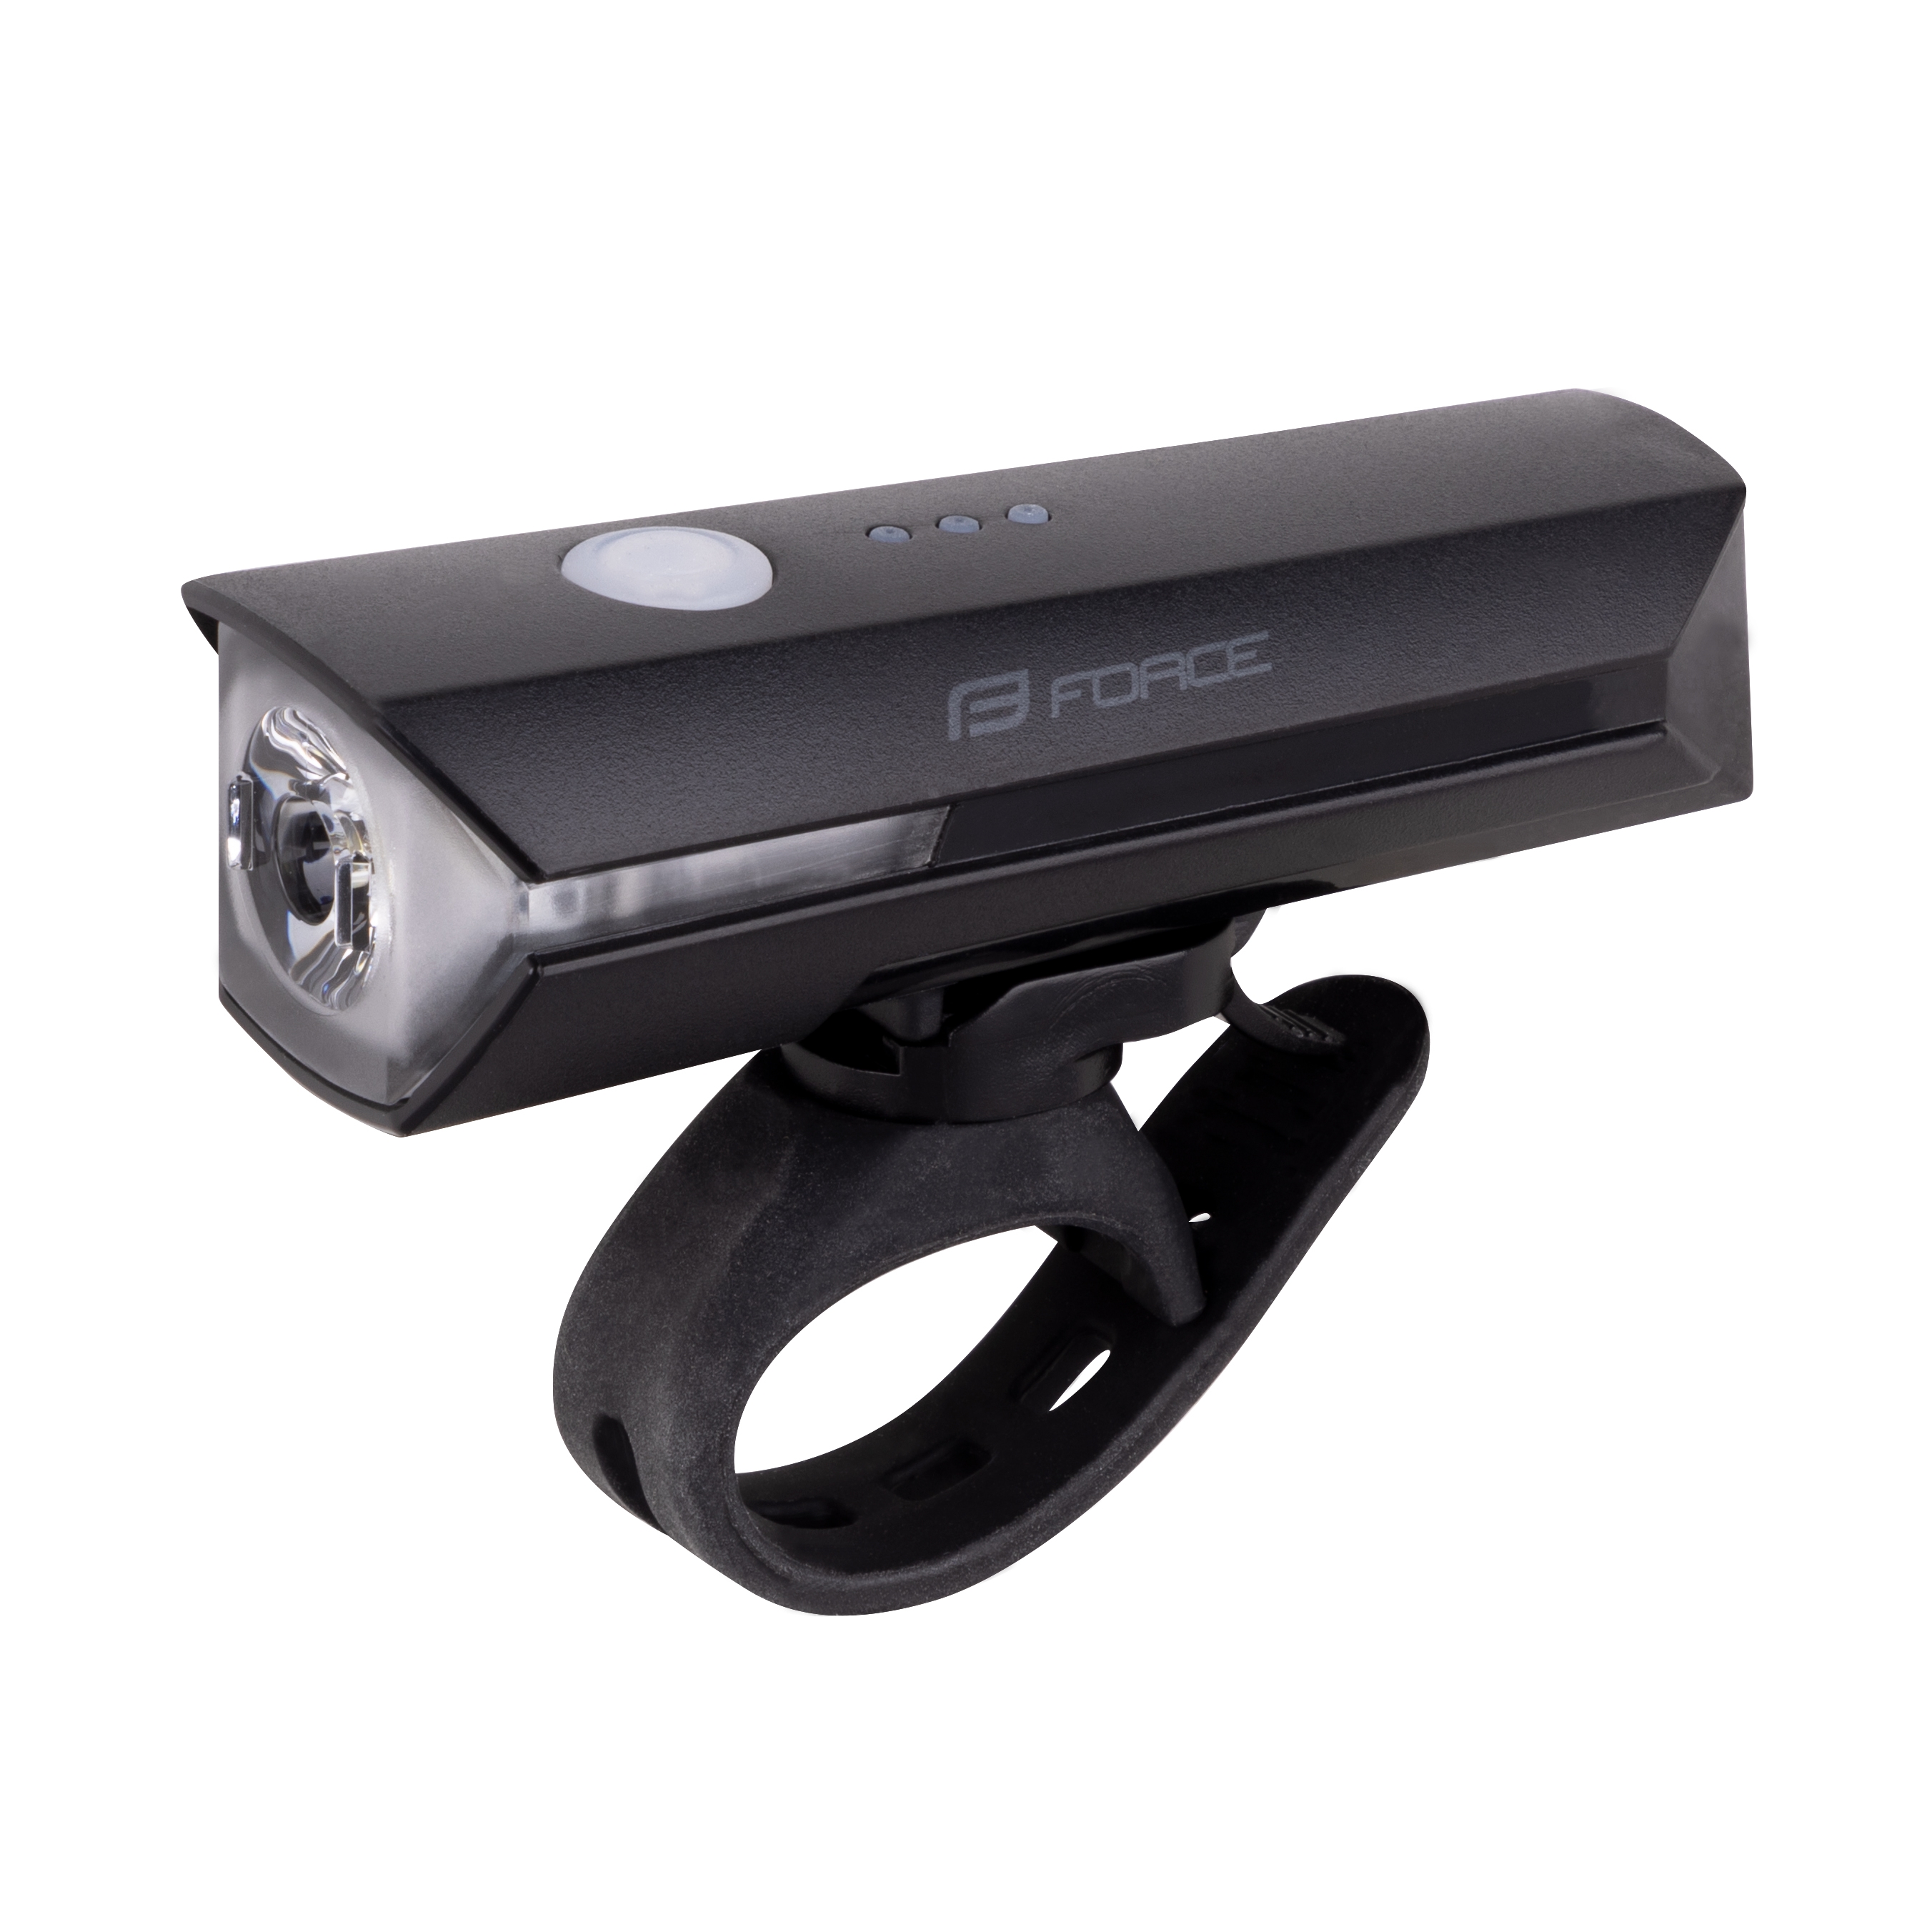 světlo přední FORCE FLUX 550LM USB, černé umístění: Přední, baterie: USB dobíjecí, svítivost: větší než 400LM